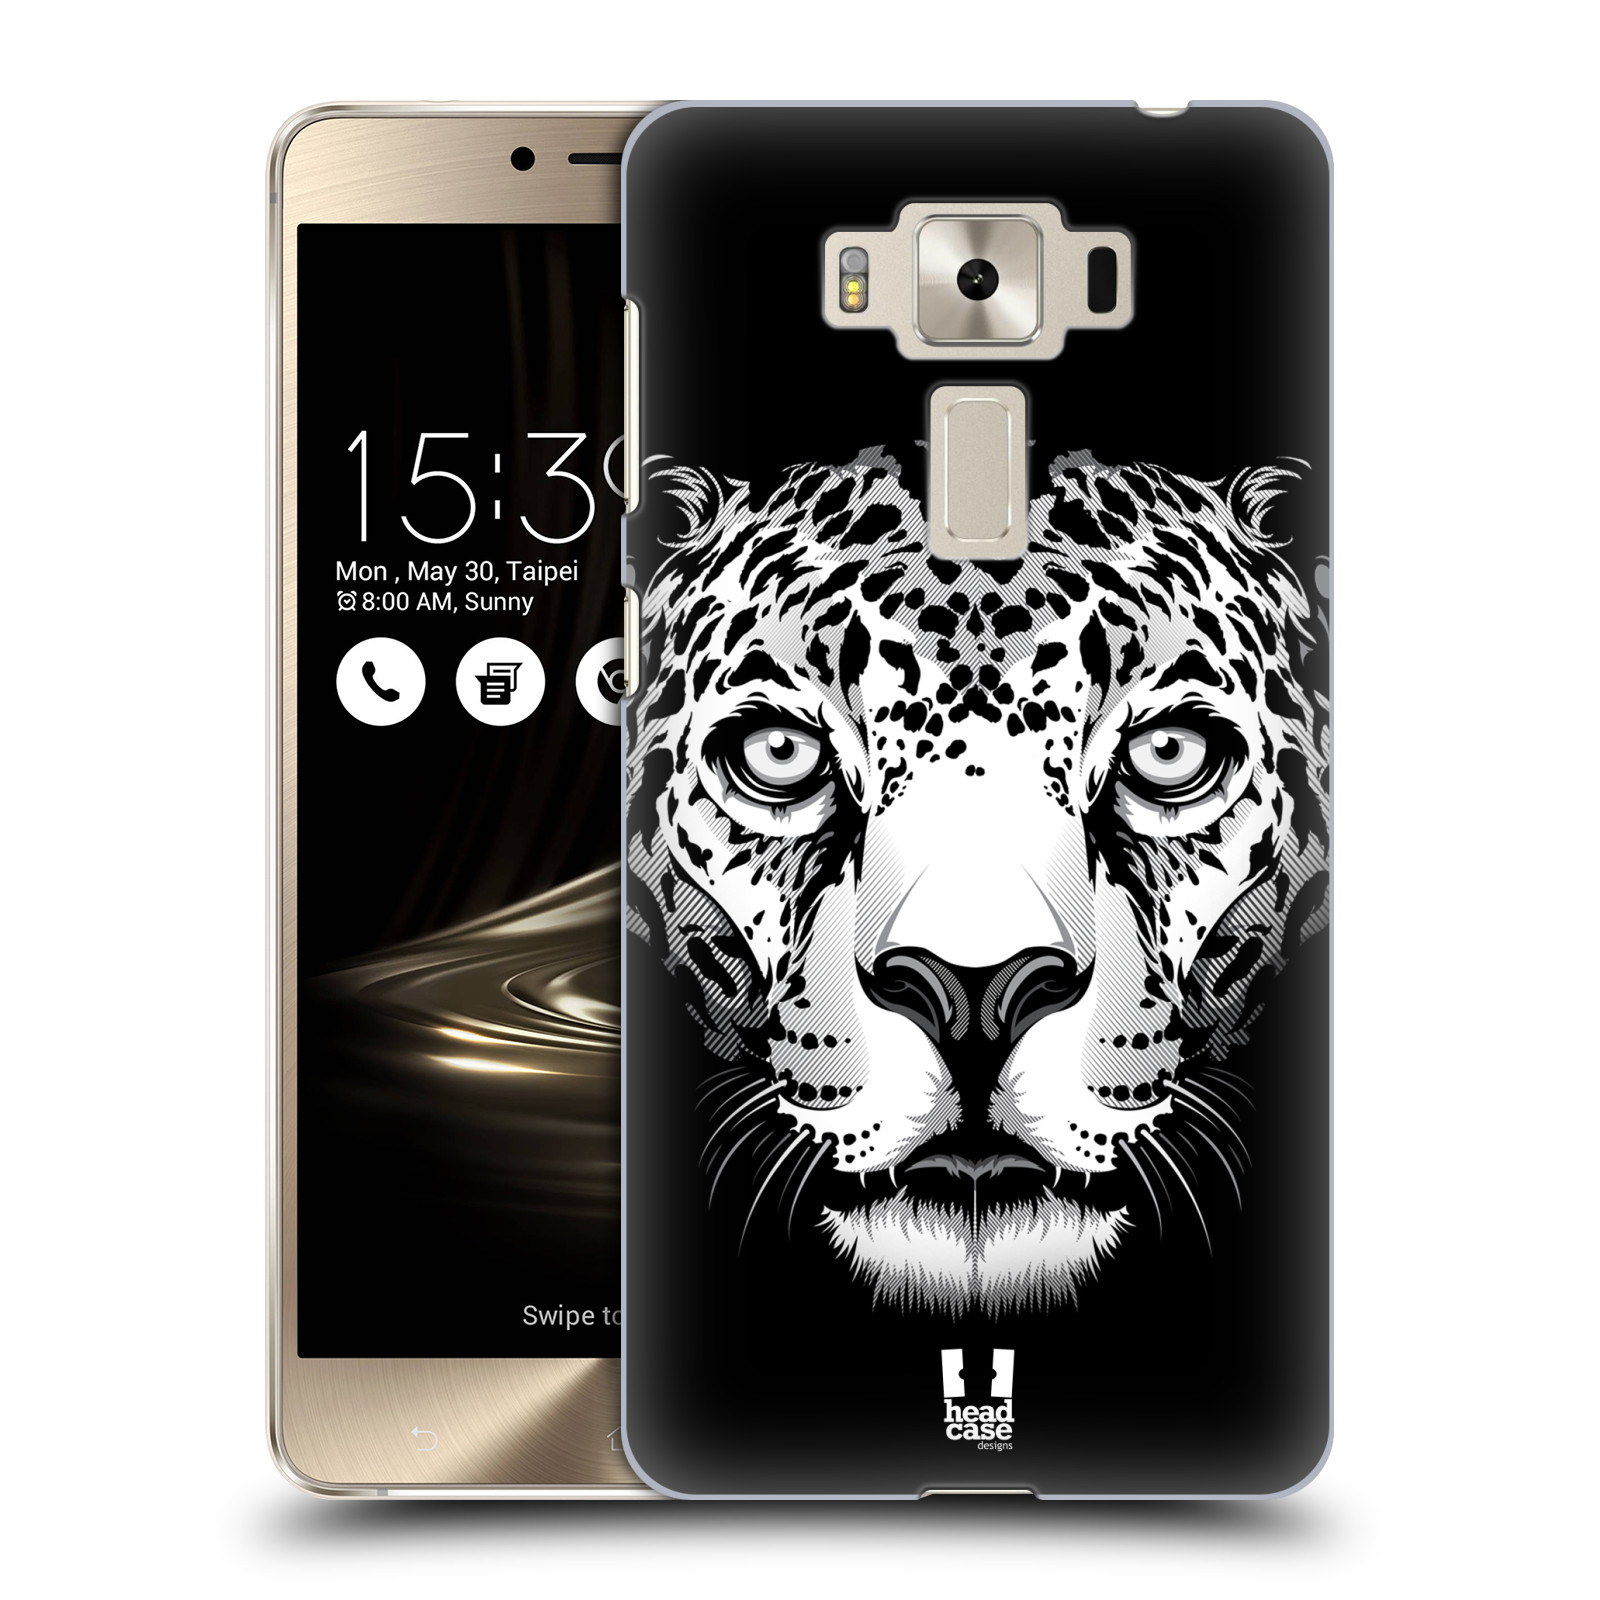 HEAD CASE plastový obal na mobil Asus Zenfone 3 DELUXE ZS550KL vzor Zvíře kreslená tvář leopard